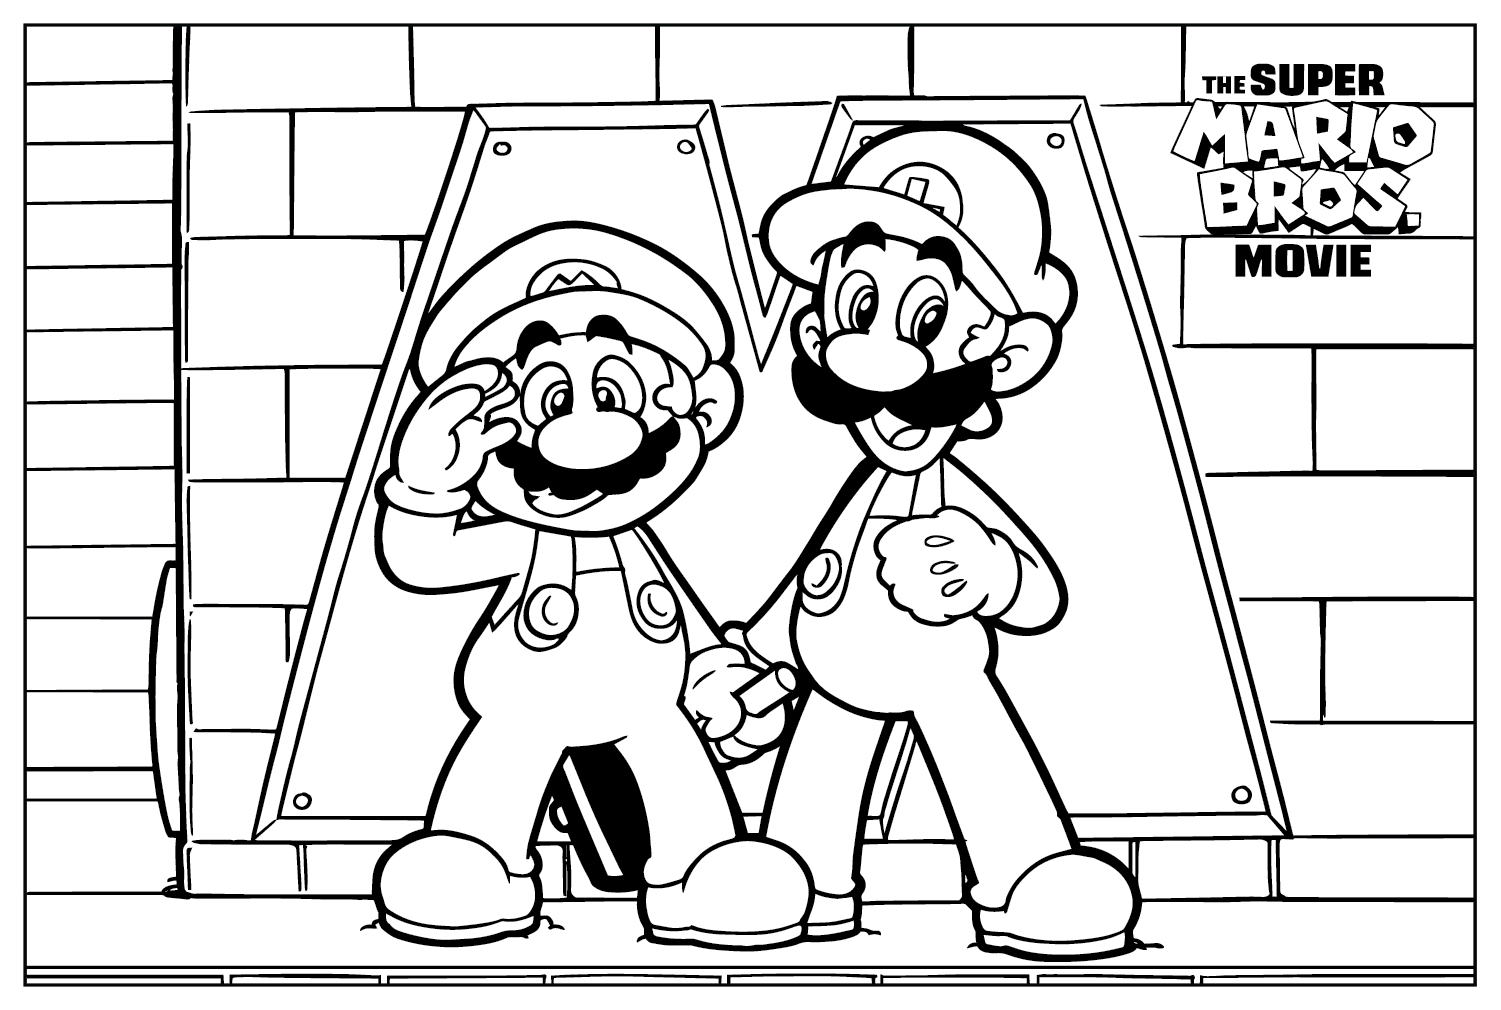 Цветная страница Марио и Луиджи из фильма Super Mario Bros.